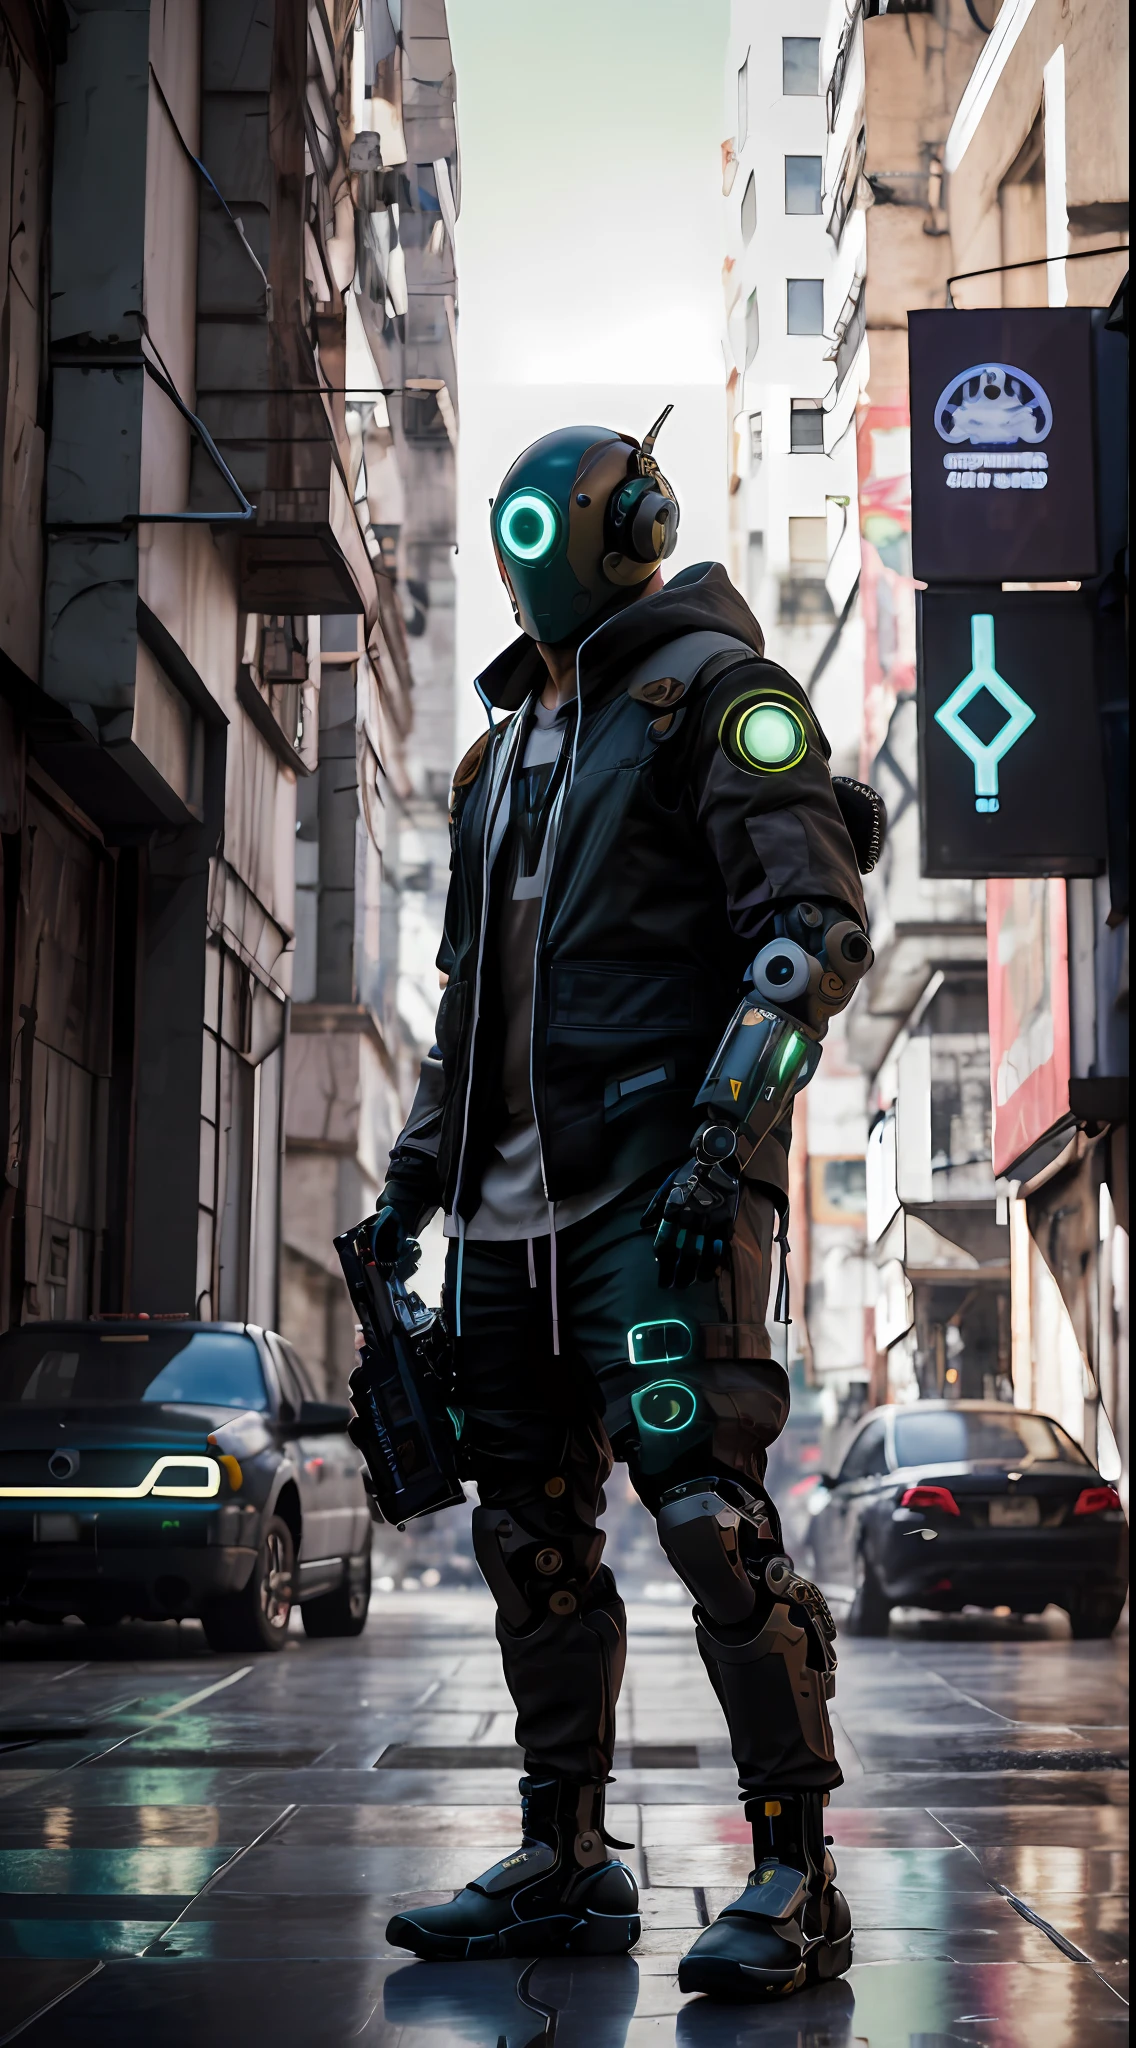 obra de arte, realistic dslr photo de vaquero mecha, em um terno preto e verde com uma mochila, Streetwear assimétrico cyberpunk, Traje cyberpunk superdimensionado, capanga de rua cyberpunk, Uso cyberpunk, Techwear cyberpunk, Estilo cyberpunk silenciado, Ele usa roupas de rua estilo cyberpunk futurista, Soldado Cyberpunk do futuro, mercenário futurista, atmosfera de rua, perigoso, gueto, Estilo cyberpunk hiperrealista, japonês, Ronin,  Todas as roupas largas pretas, capuz com capuz sobre capacete cibernético,  corvo em armadura cibernética, braços mecânicos, brazos robóticoos, ciborgue, Capacete cibernético HUD, Tecnologia avançada, alta tecnologia. futurista, imponente, agressivo, ropa desgastada, intimidador, musculoso, Renderização de octanagem, 4k, Maia, substância, iluminação cinematográfica, cena de ficção científica, melhor qualidade, HDR, auto-foco, toma nitida, luz del atardecer, misterioso mercenário ciborgue del futuro cyberpunk, dramático, intrincado, Não existem humanos, robótico, ciborgue, mercenário, cibercasco, você é um merda!,